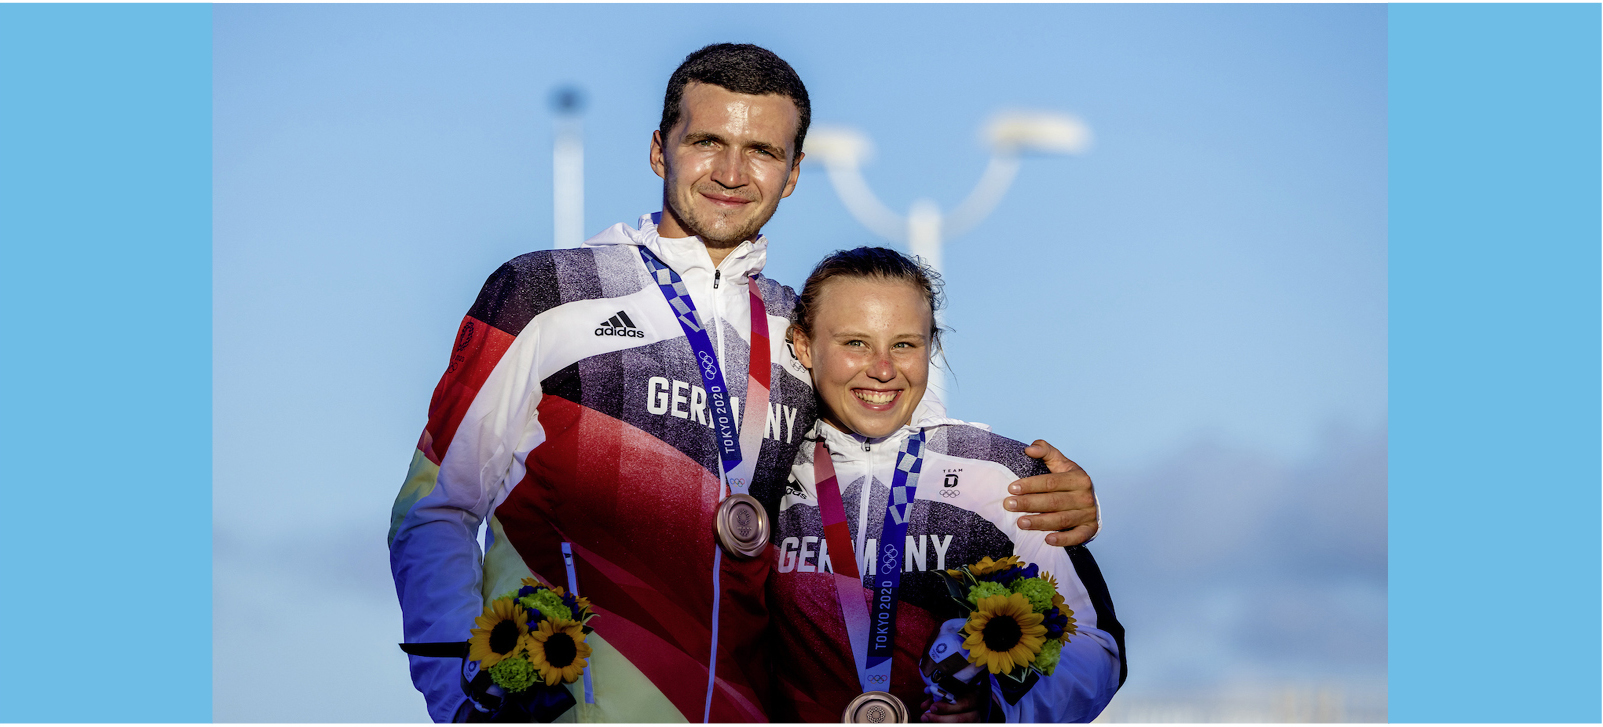 Glückliche Bronze-Gewinner: Paul Kohlhoff und Alica Stuhlemmer (Foto© Sailing Energy)